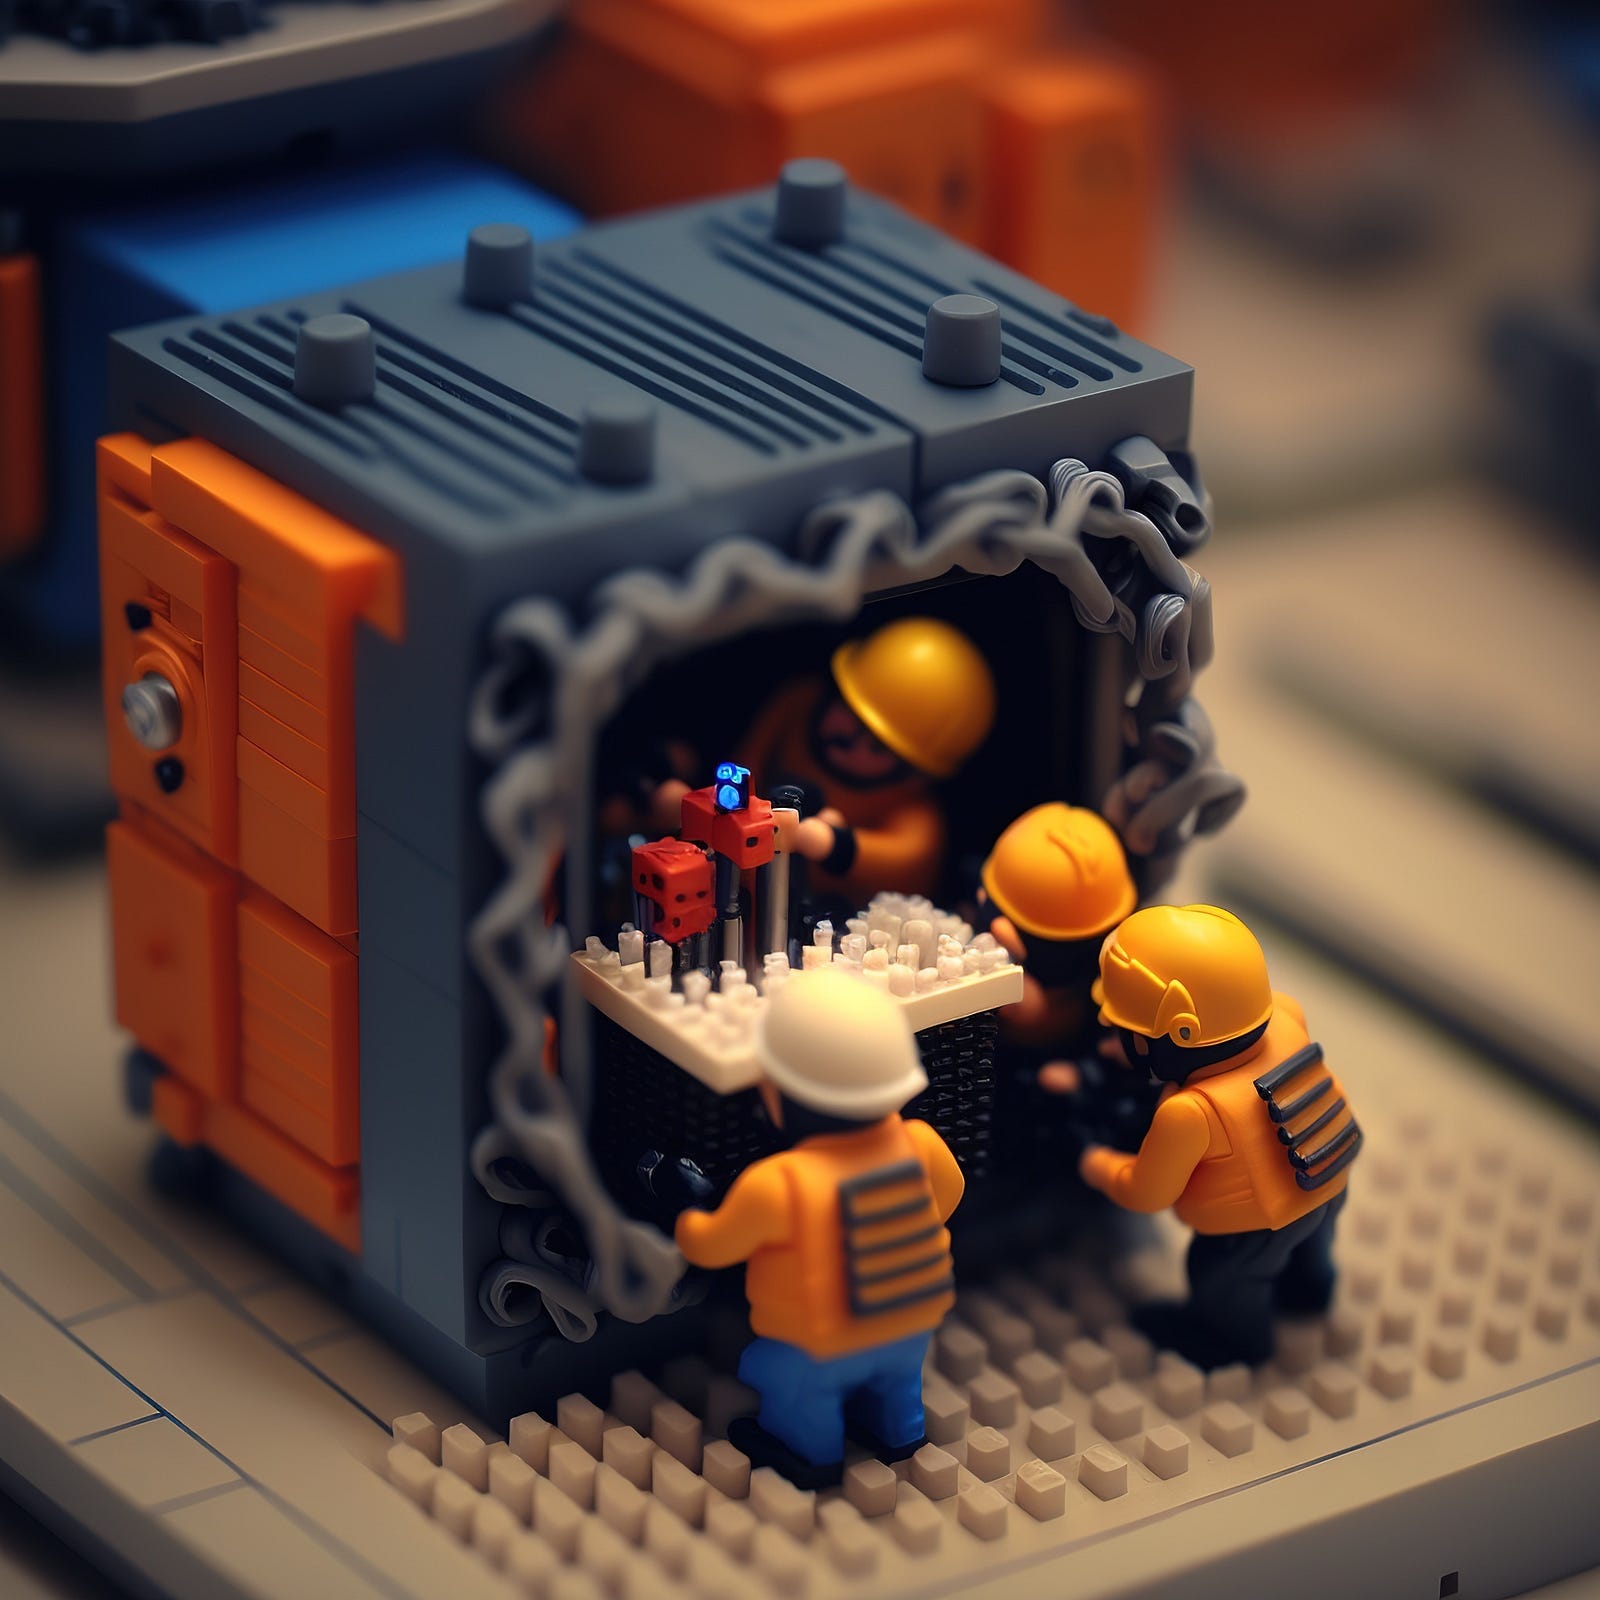 Immagine decorativa con omini stile Lego che collaborano per la messa a punto di processori